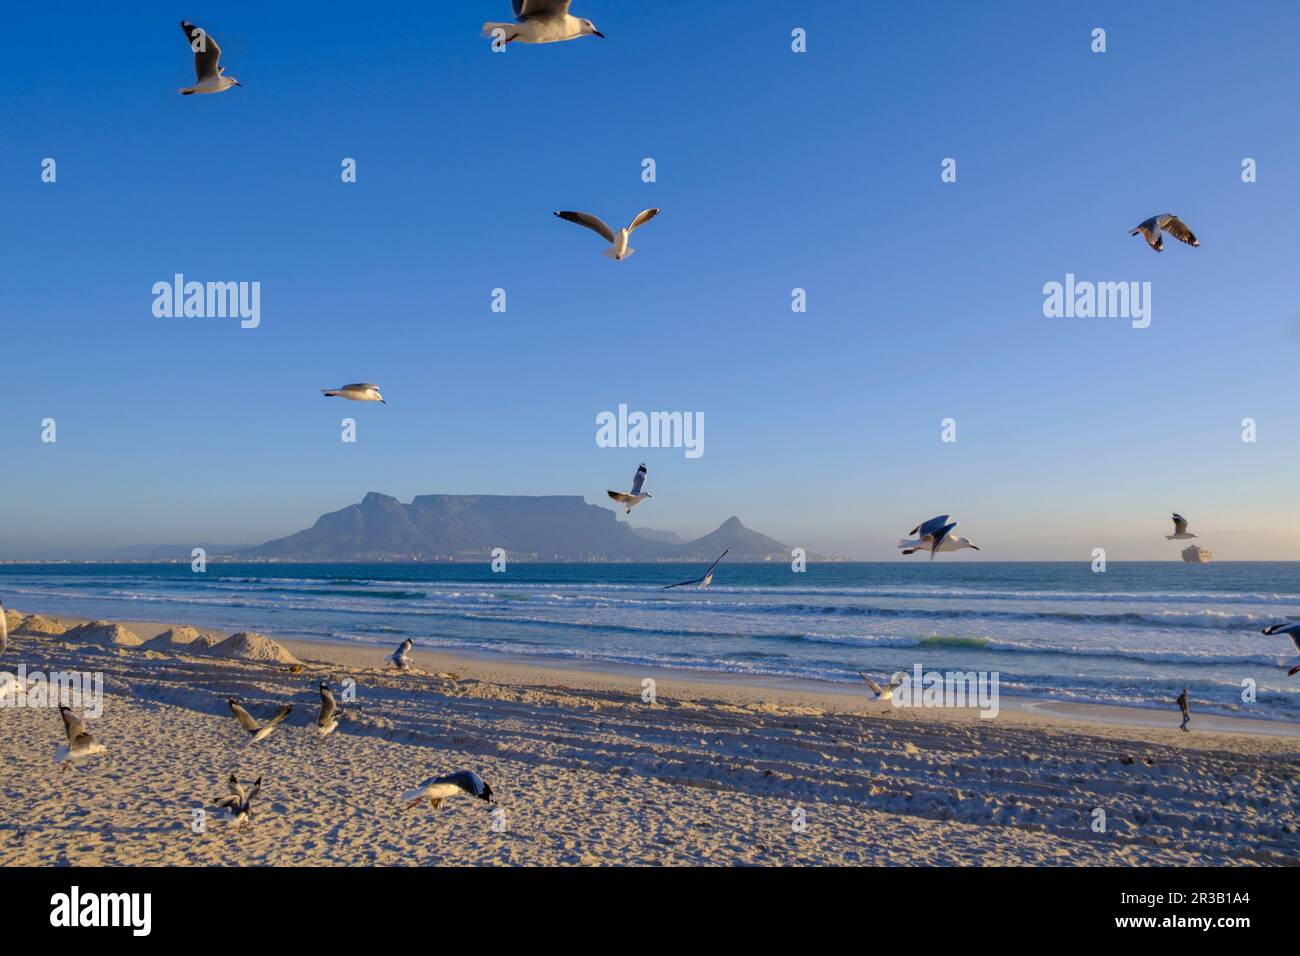 Afrique du Sud, province du Cap occidental, Flock de mouettes volant sur une plage de sable avec Table Mountain en arrière-plan Banque D'Images